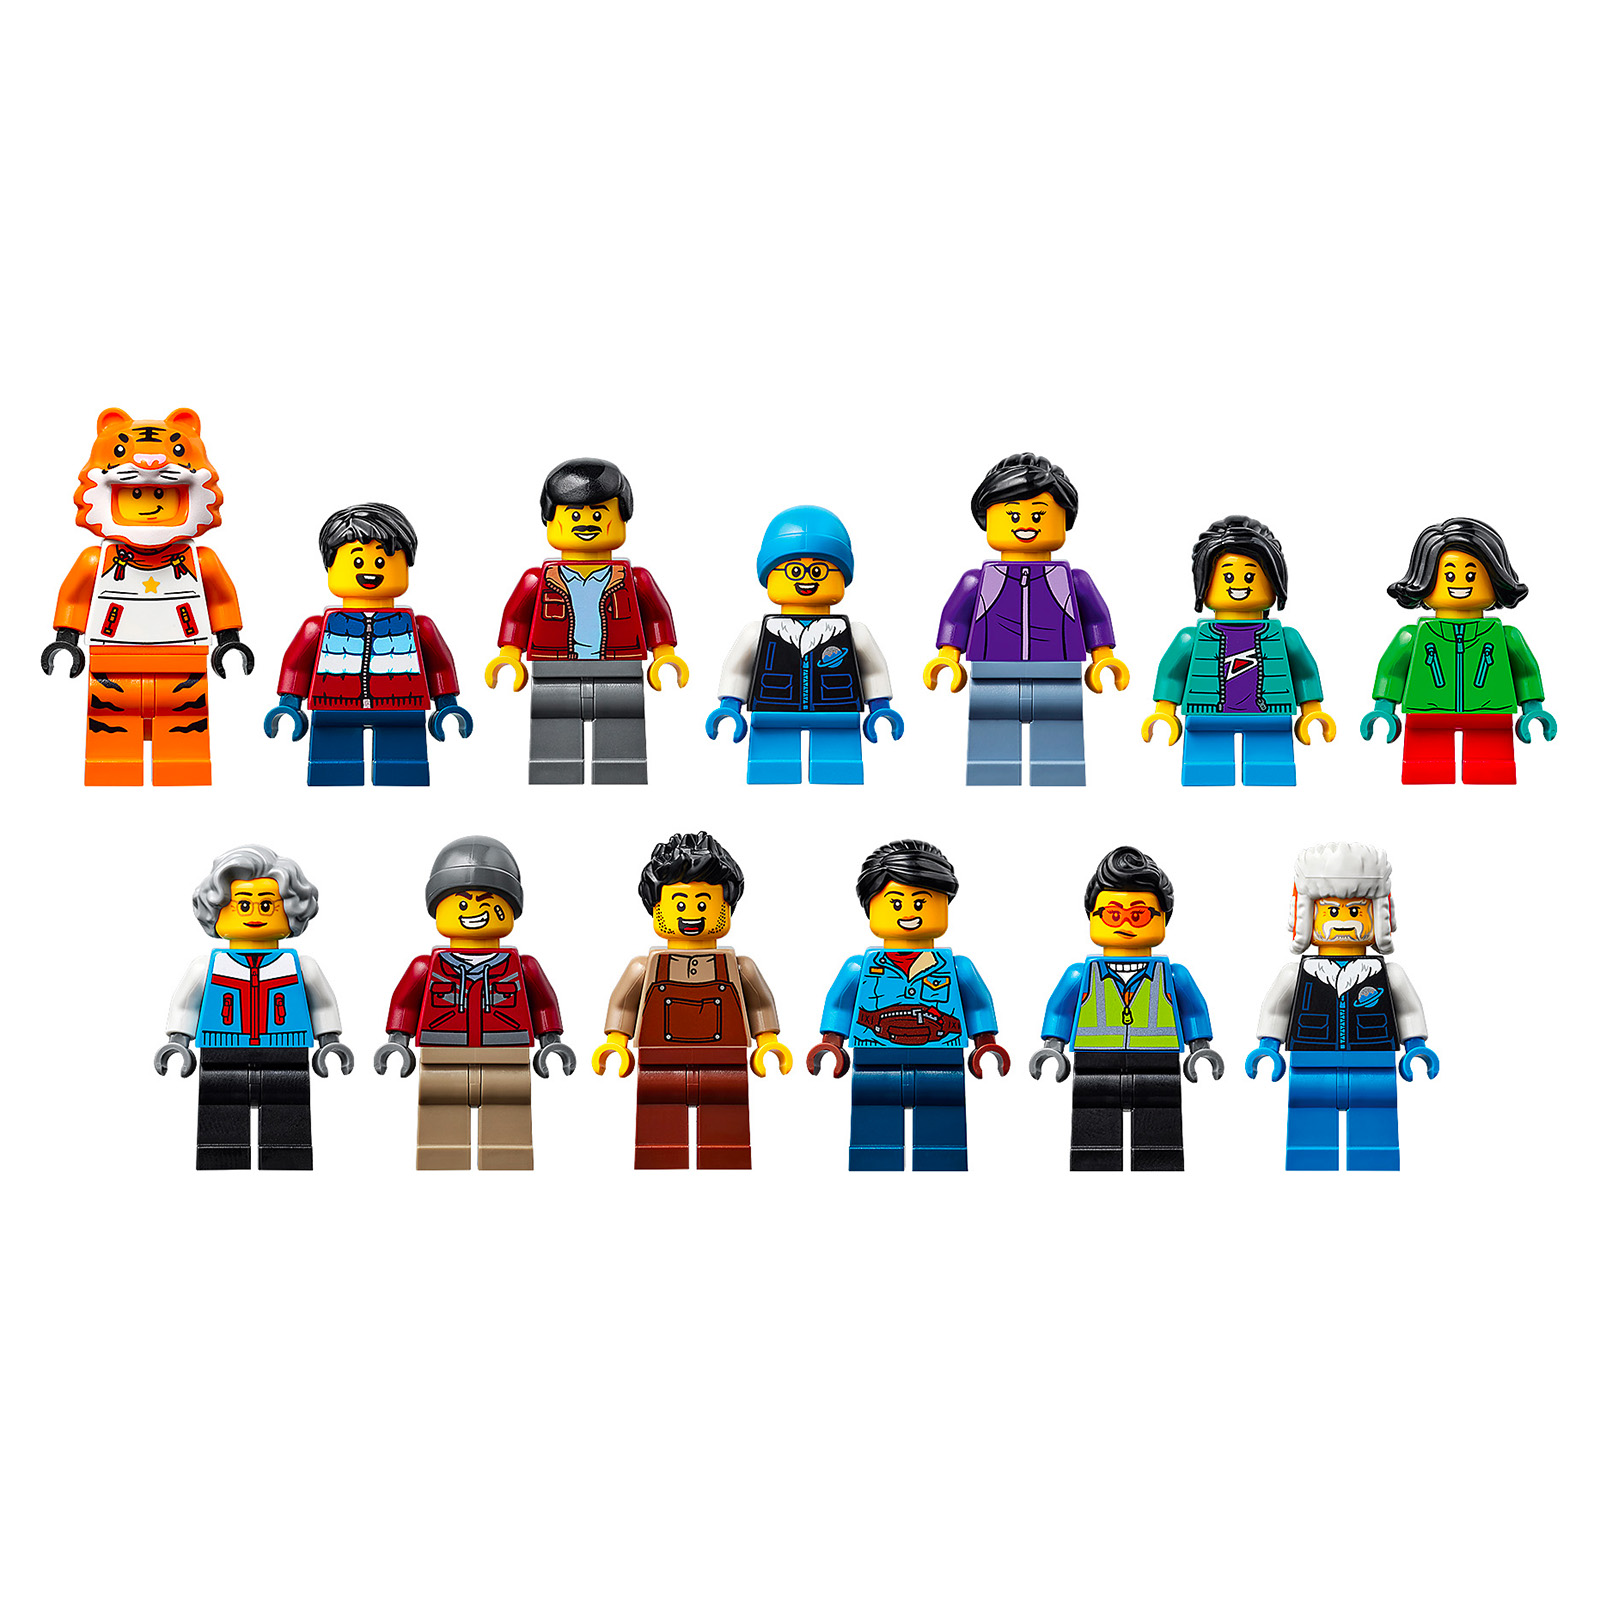 Les modèles LEGO du Nouvel An chinois 2022 ont été dévoilés